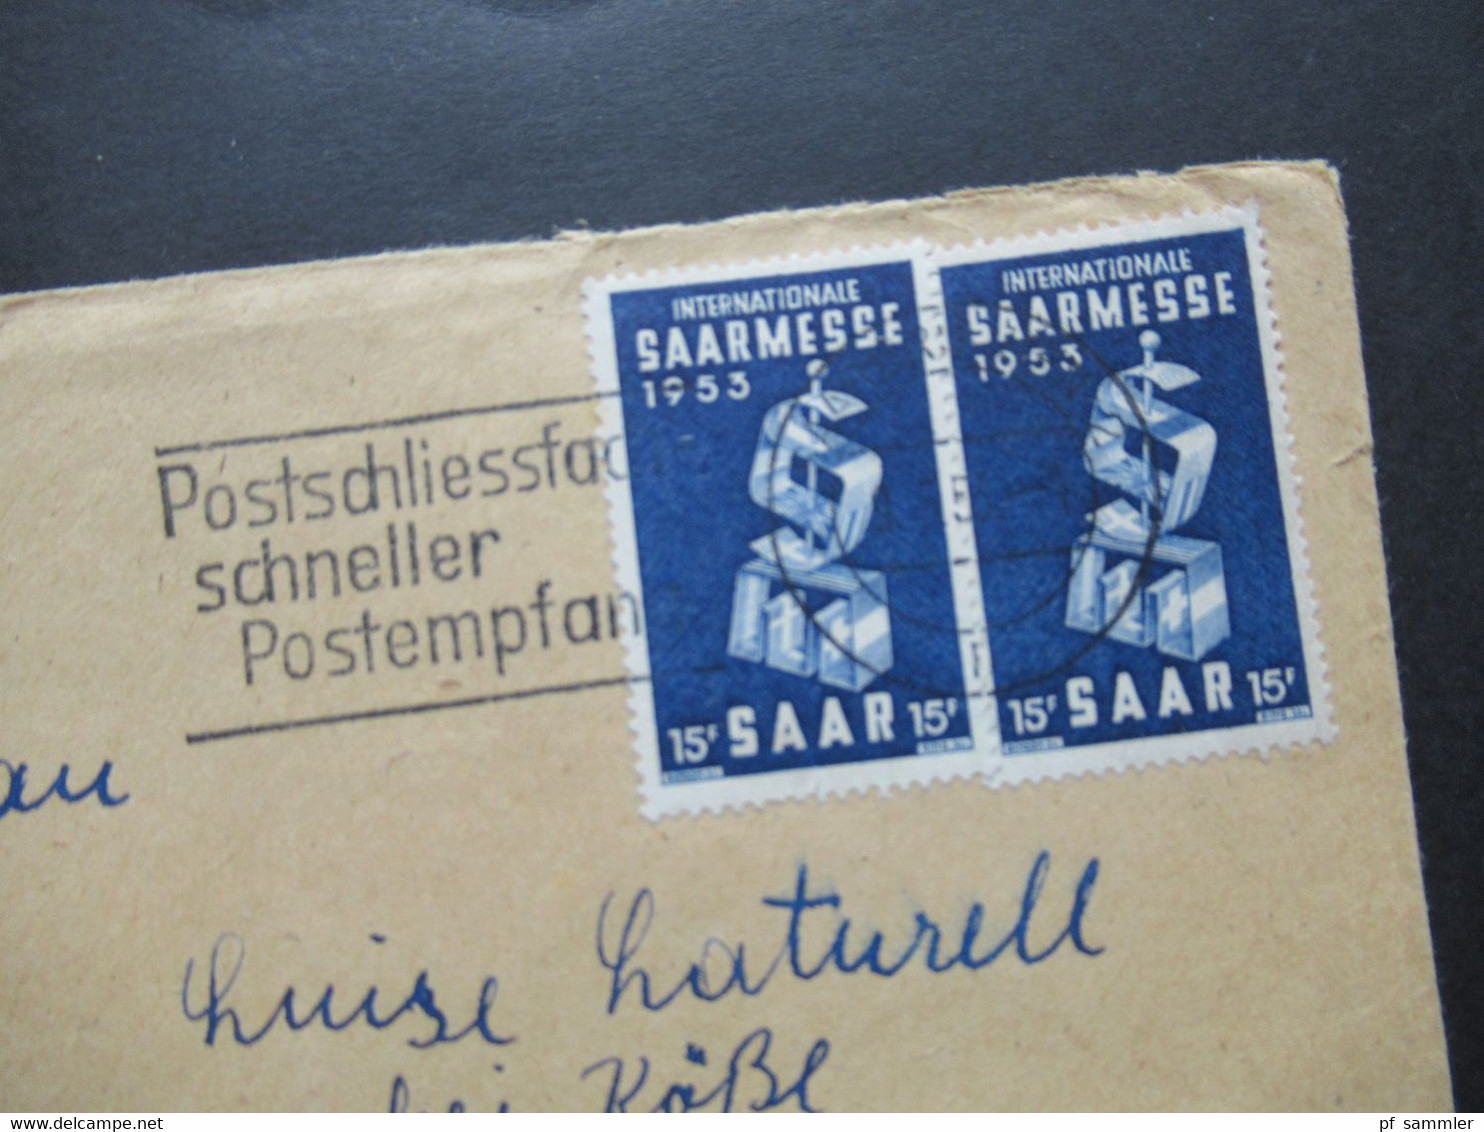 Saarland 1953 Nr.341 (2) MeF Internationale Saarmesse Werbestempel Postschliessfach Schneller Postempfang - Storia Postale